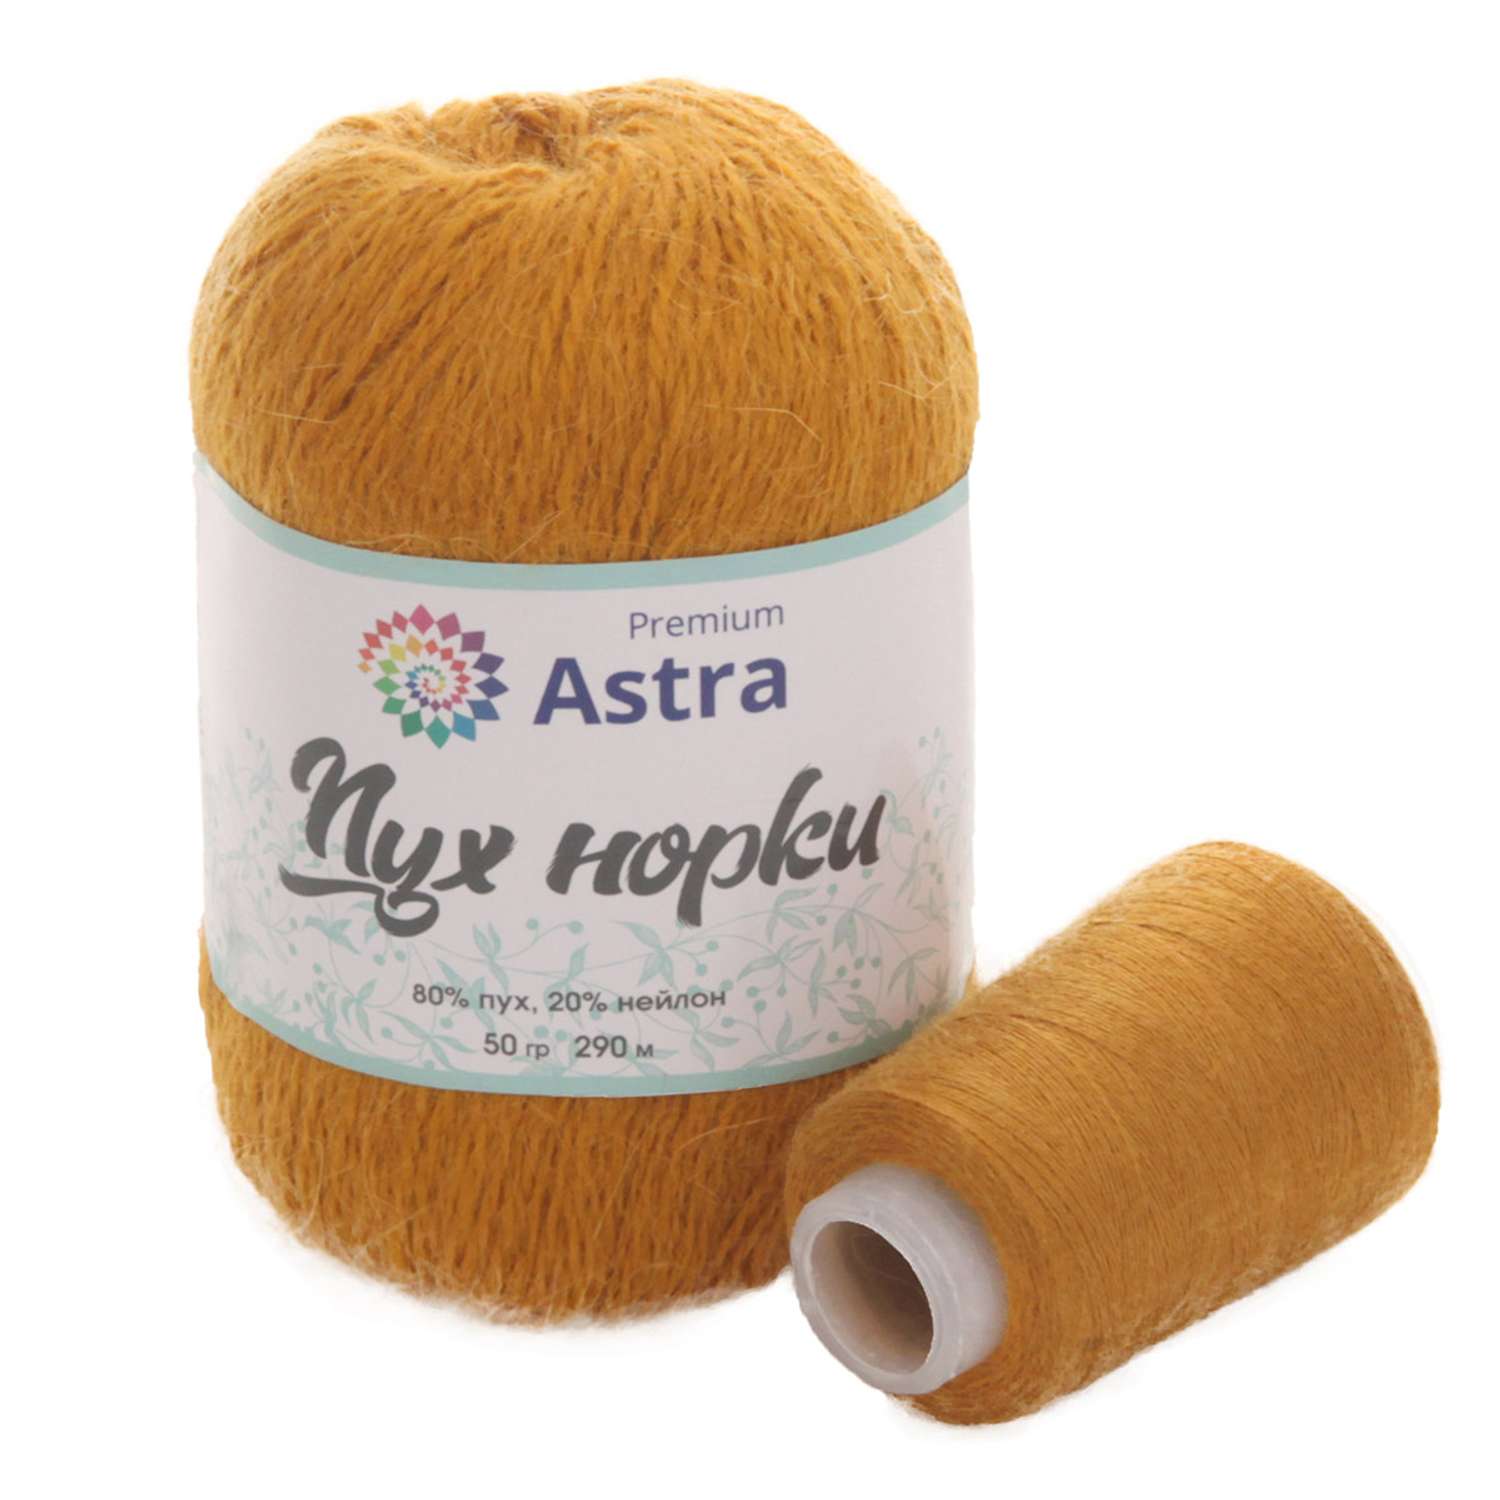 Пряжа Astra Premium Пух норки Mink yarn воздушная с ворсом 50 г 290 м 036 горчичный 1 моток - фото 4